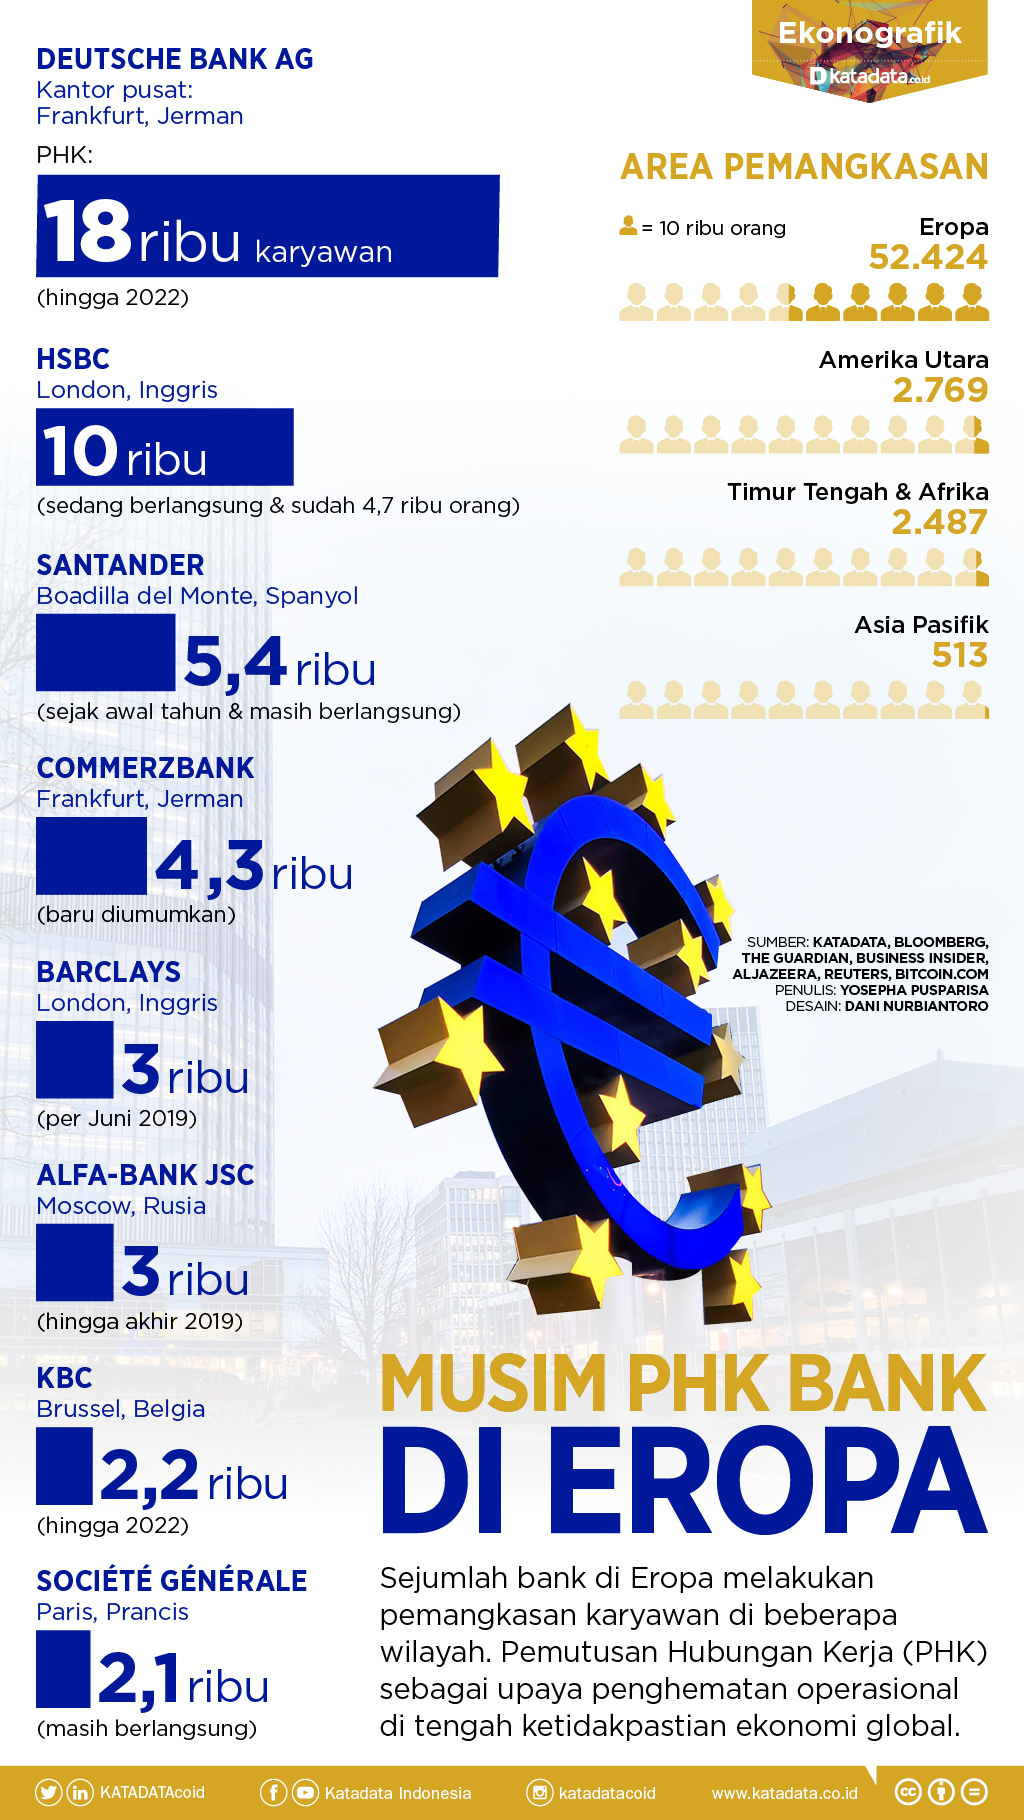 PHK Bank di Eropa